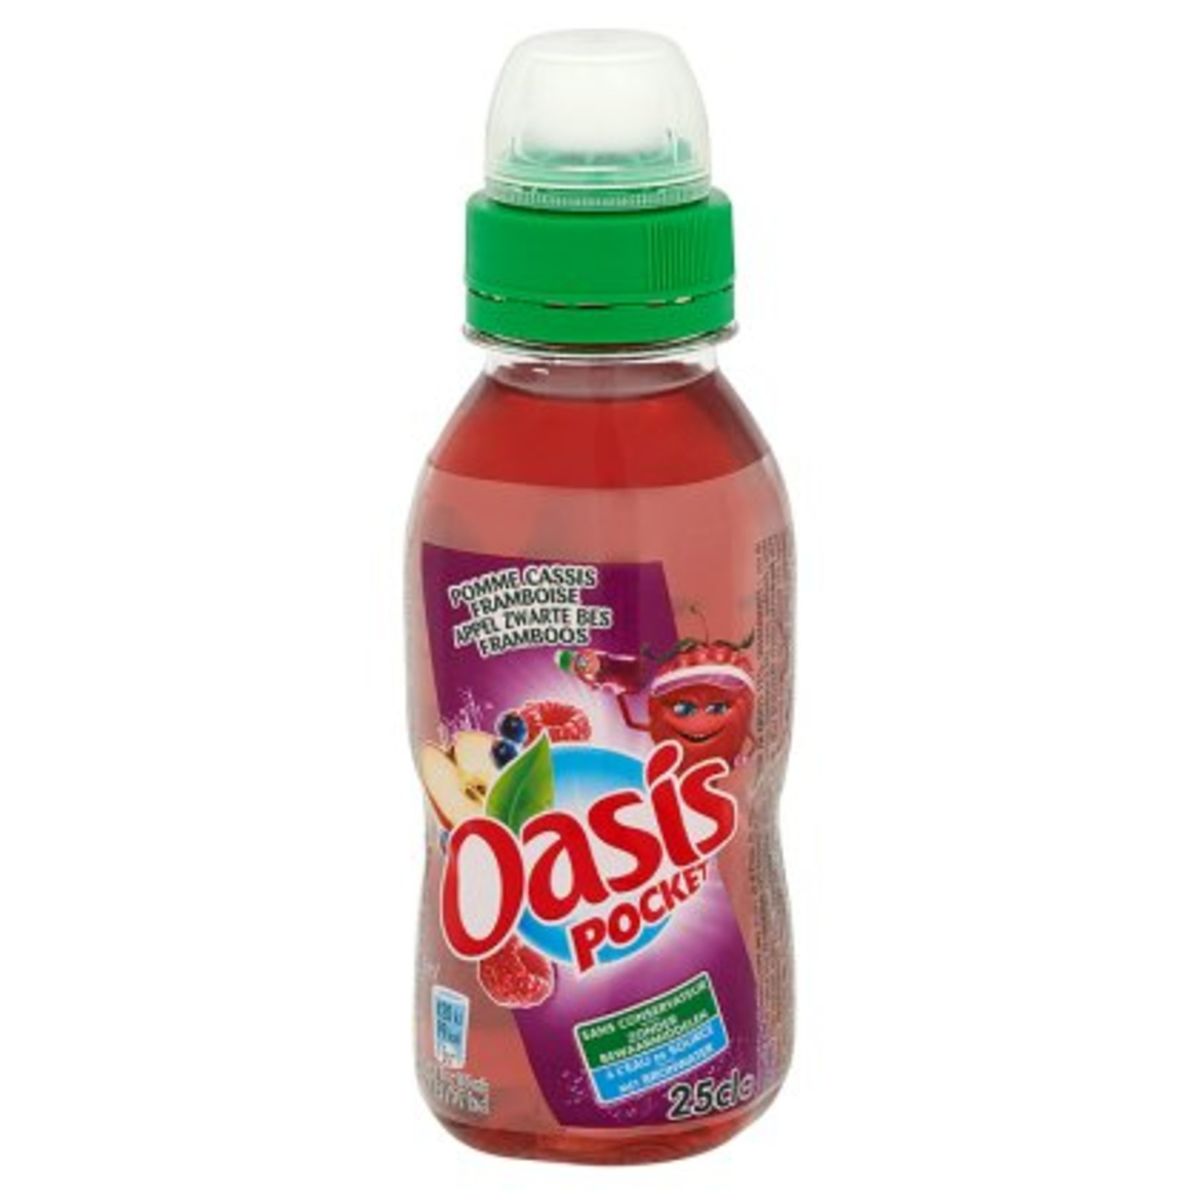 Oasis Pocket Appel Zwarte Bes Framboos 25 cl